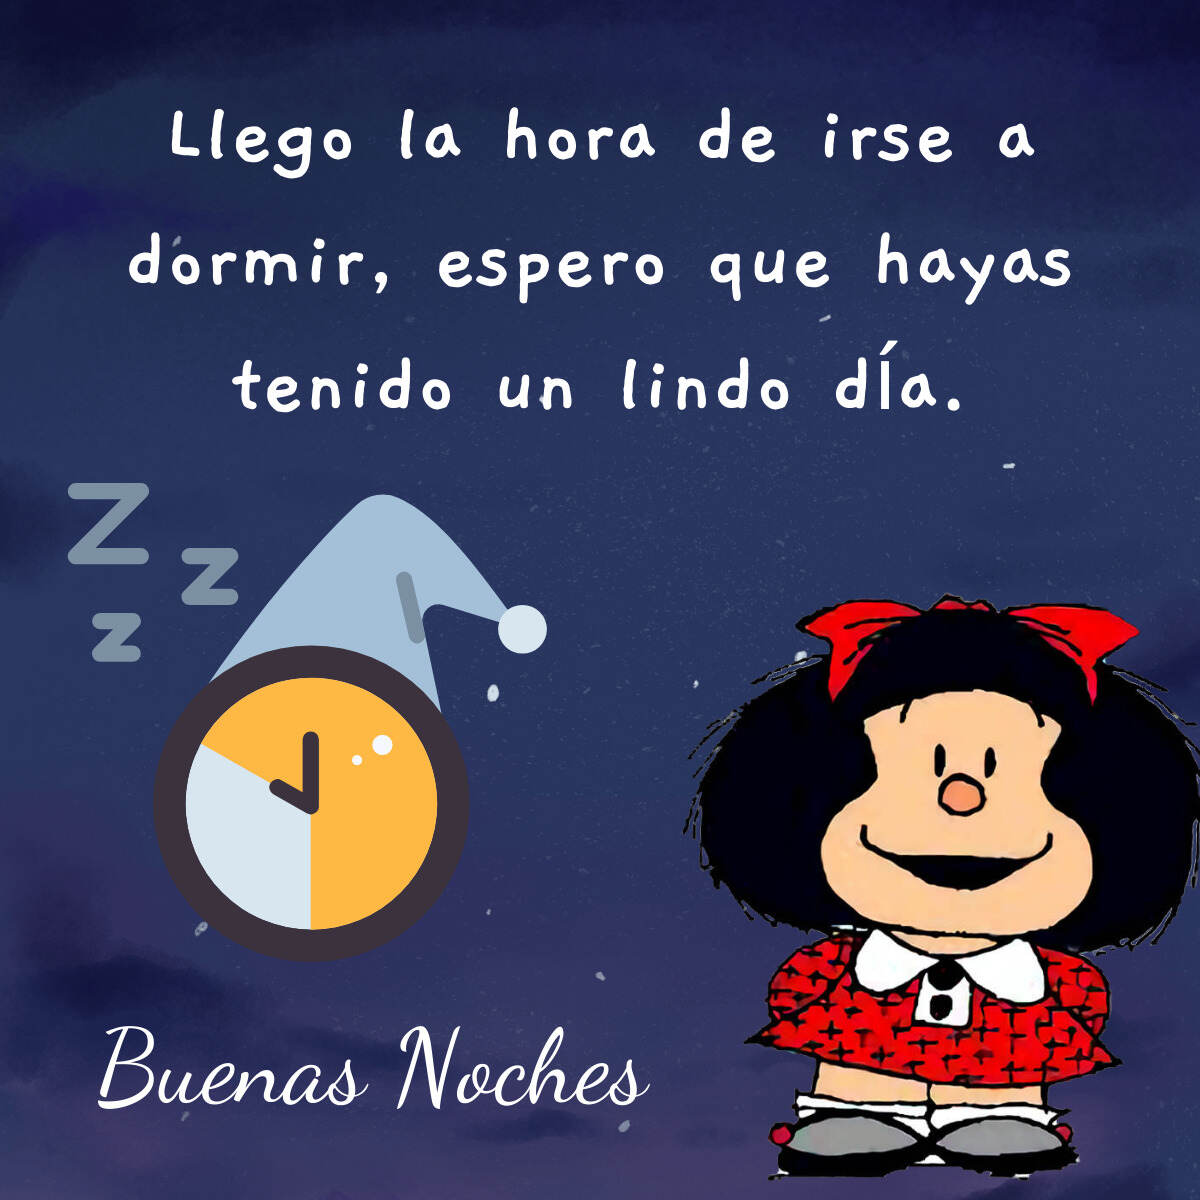 Imágenes de Mafalda Buenas Noches